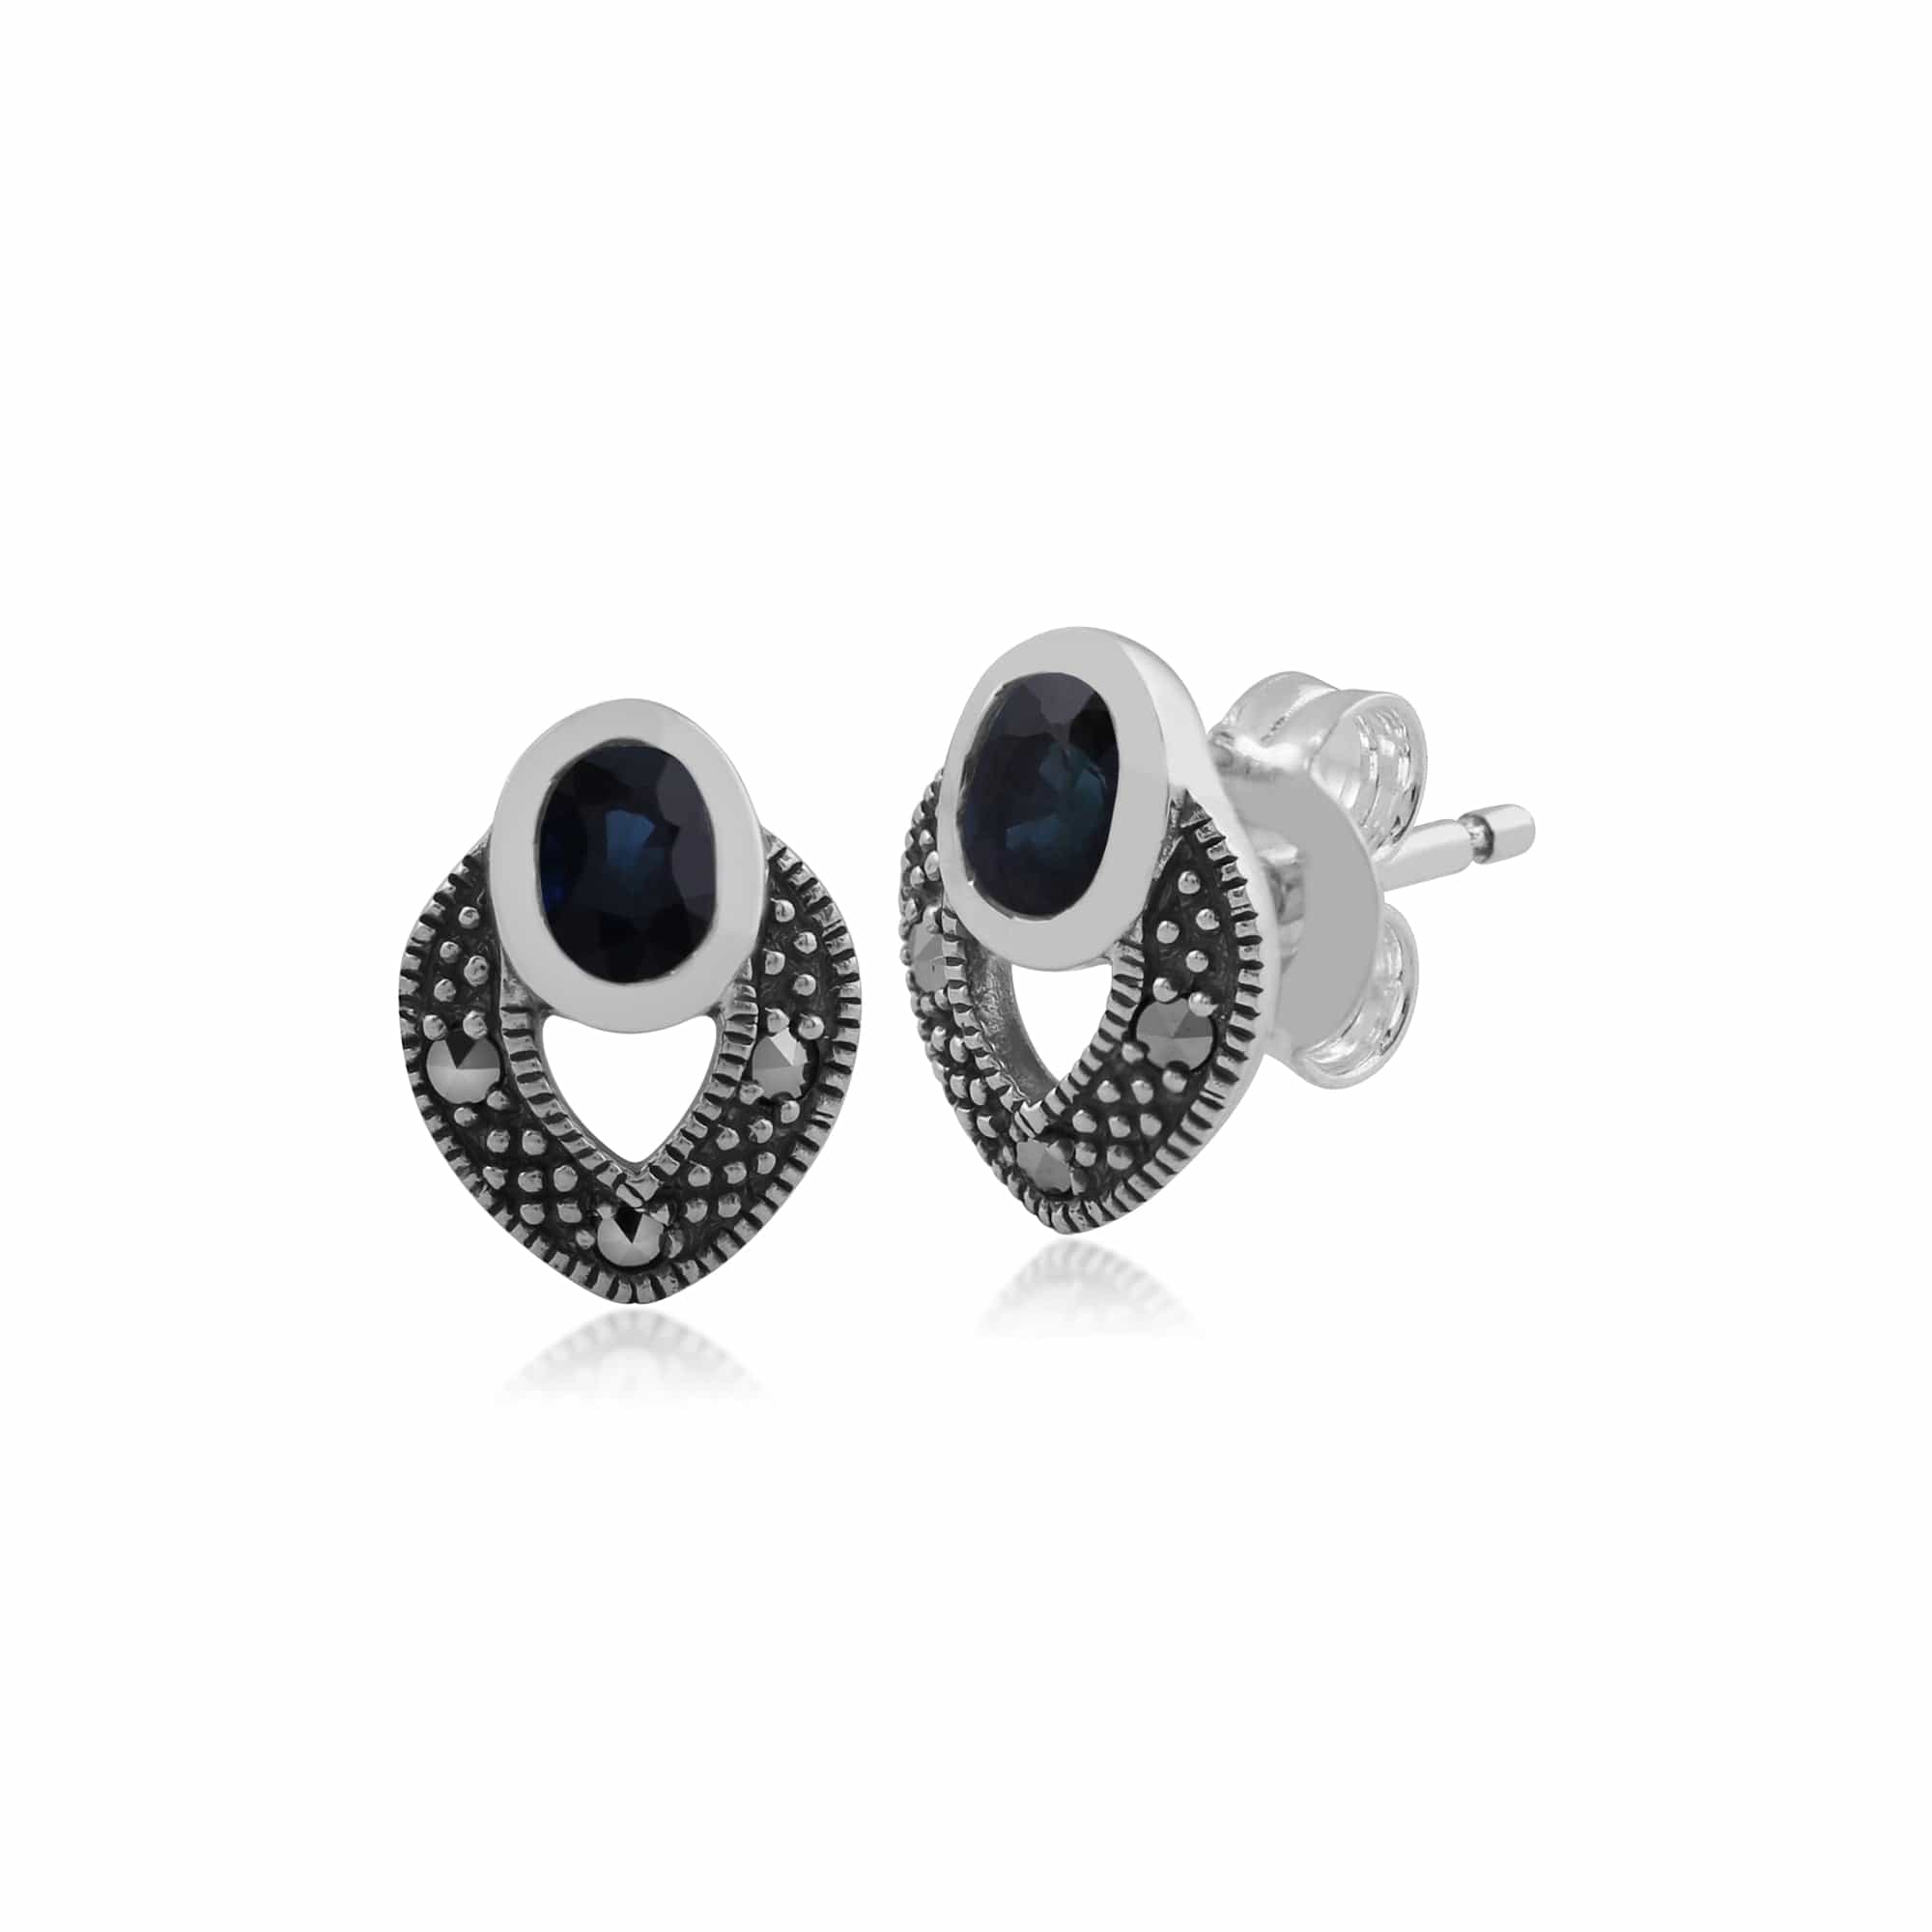 Art Deco Style Oval Sapphire & Marcasite Stud Earrings & Pendant Set in Sterling Silver - Gemondo